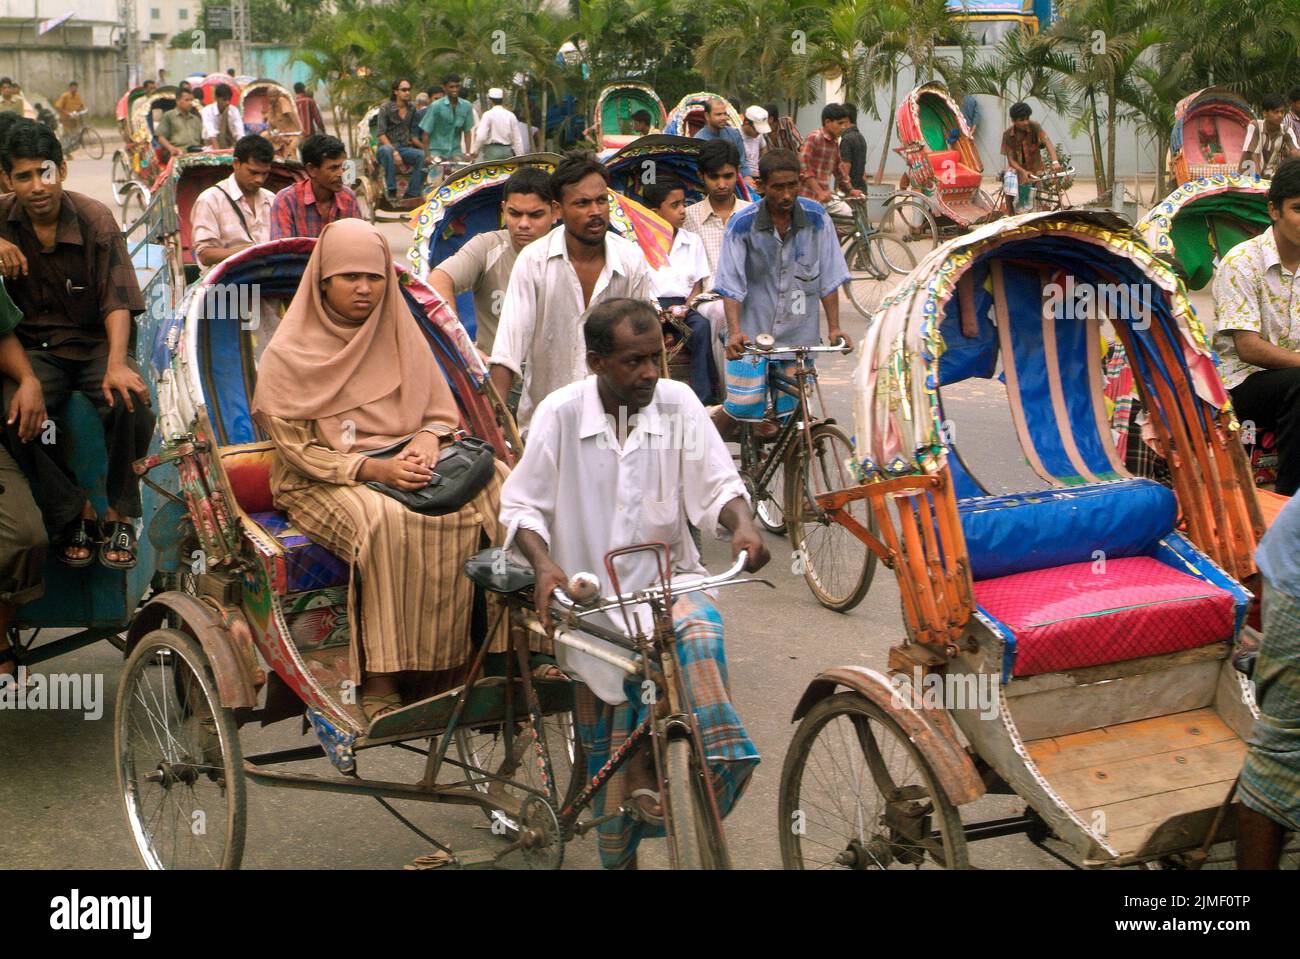 Dhaka, Bangladesch - 17. September 2007: Nicht identifizierte Personen auf traditionellen Rikschas, einer traditionellen Art von Transport Stockfoto